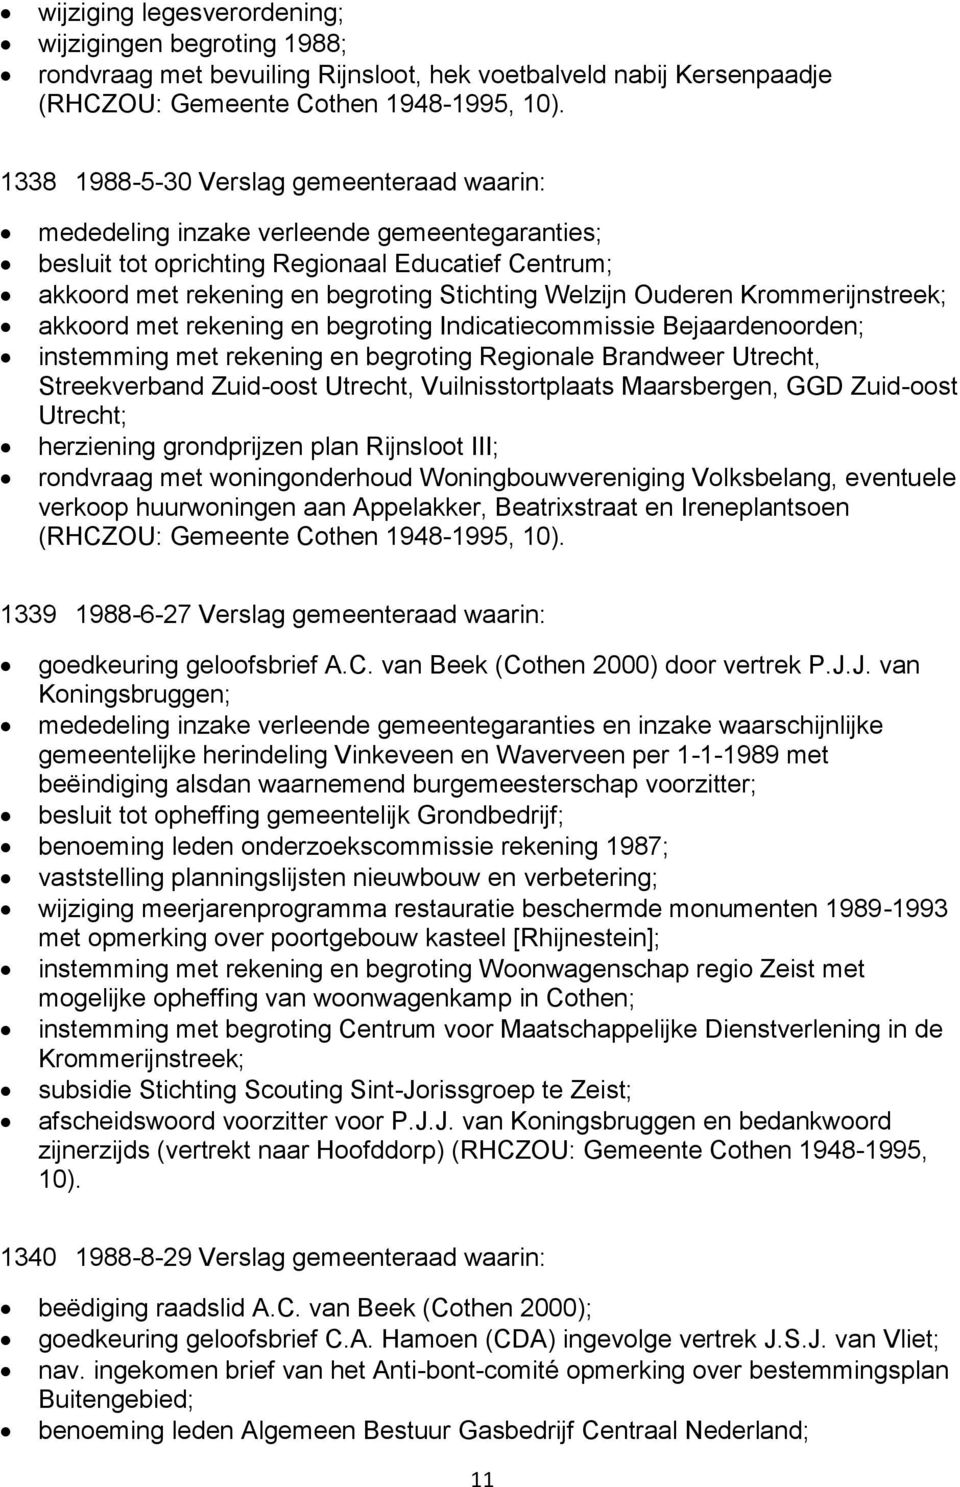 Ouderen Krommerijnstreek; akkoord met rekening en begroting Indicatiecommissie Bejaardenoorden; instemming met rekening en begroting Regionale Brandweer Utrecht, Streekverband Zuid-oost Utrecht,